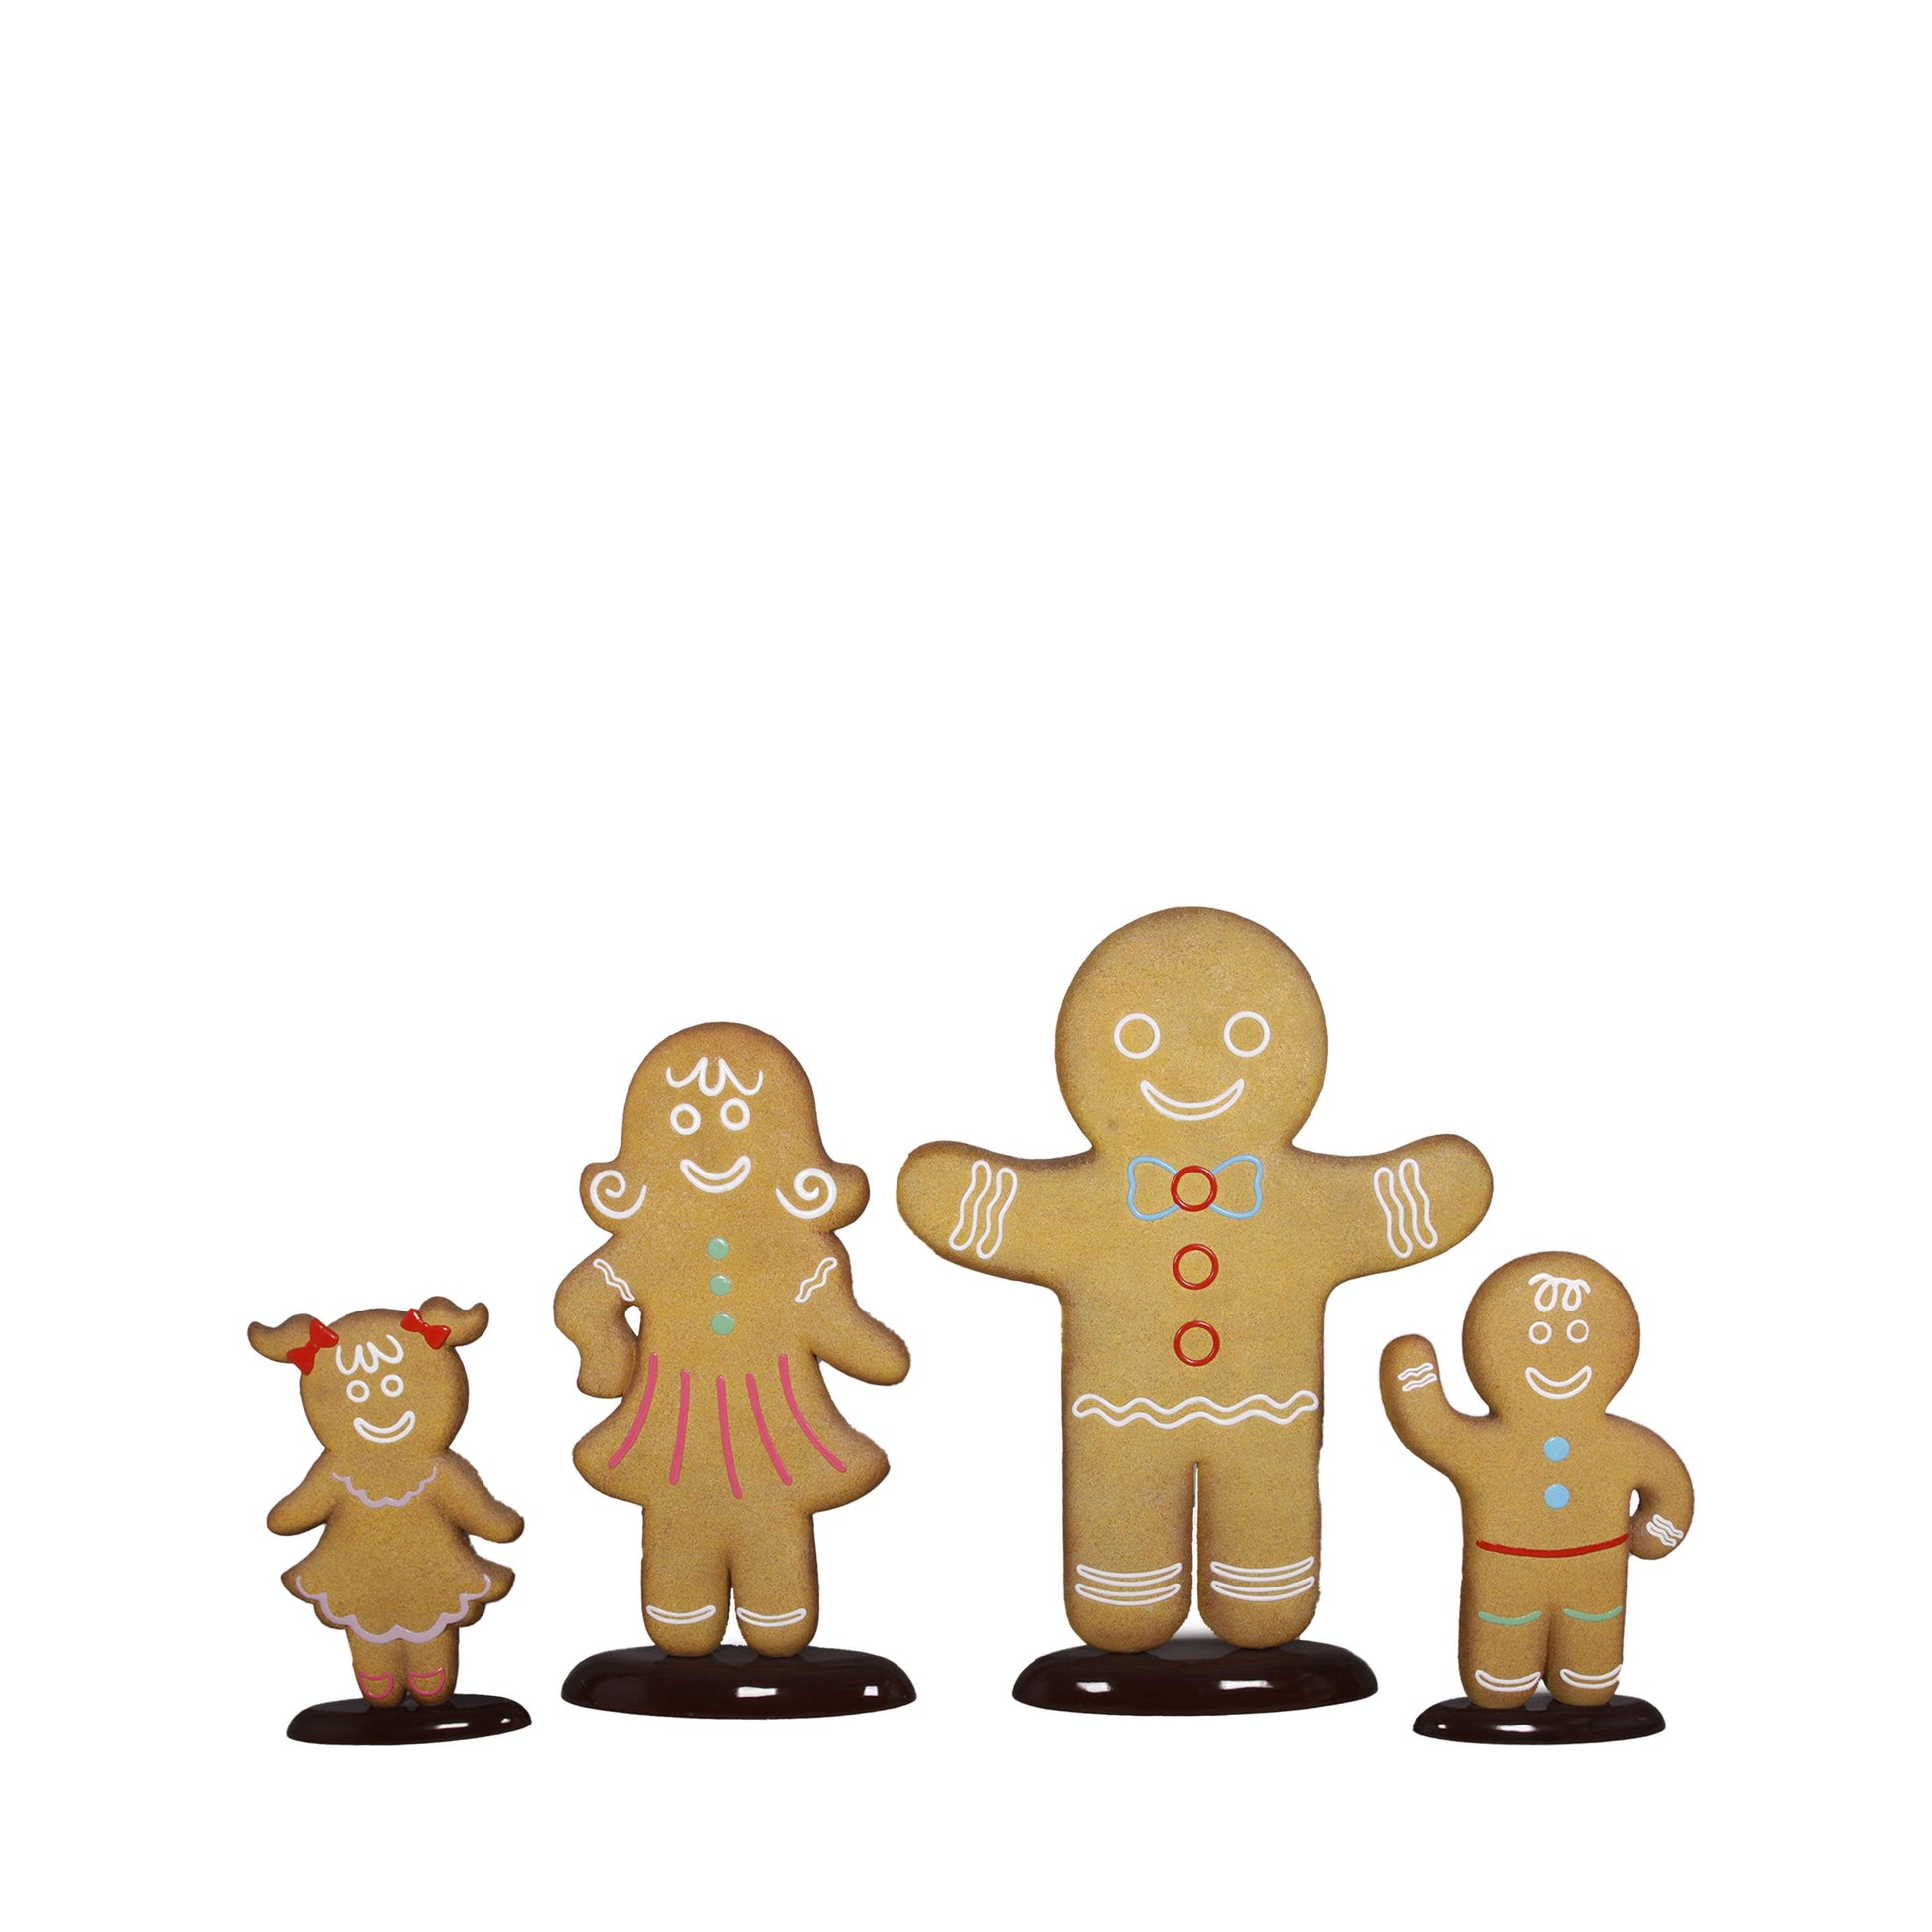 Boy Gingerbread Cookie Statue - LM Treasures Prop Rentals 